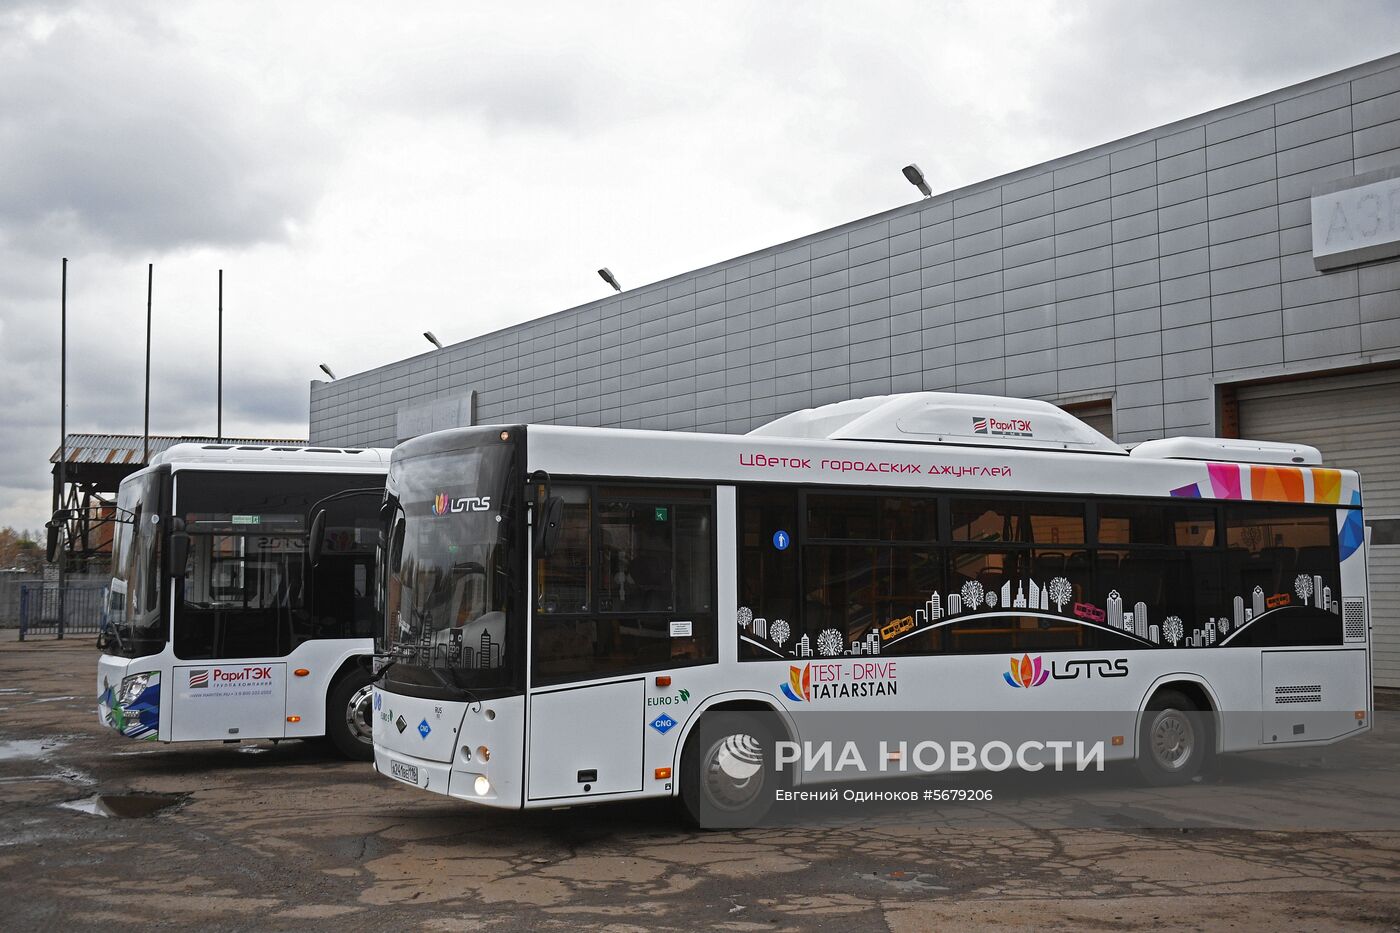 Демонстрация новых моделей автобусов Lotos